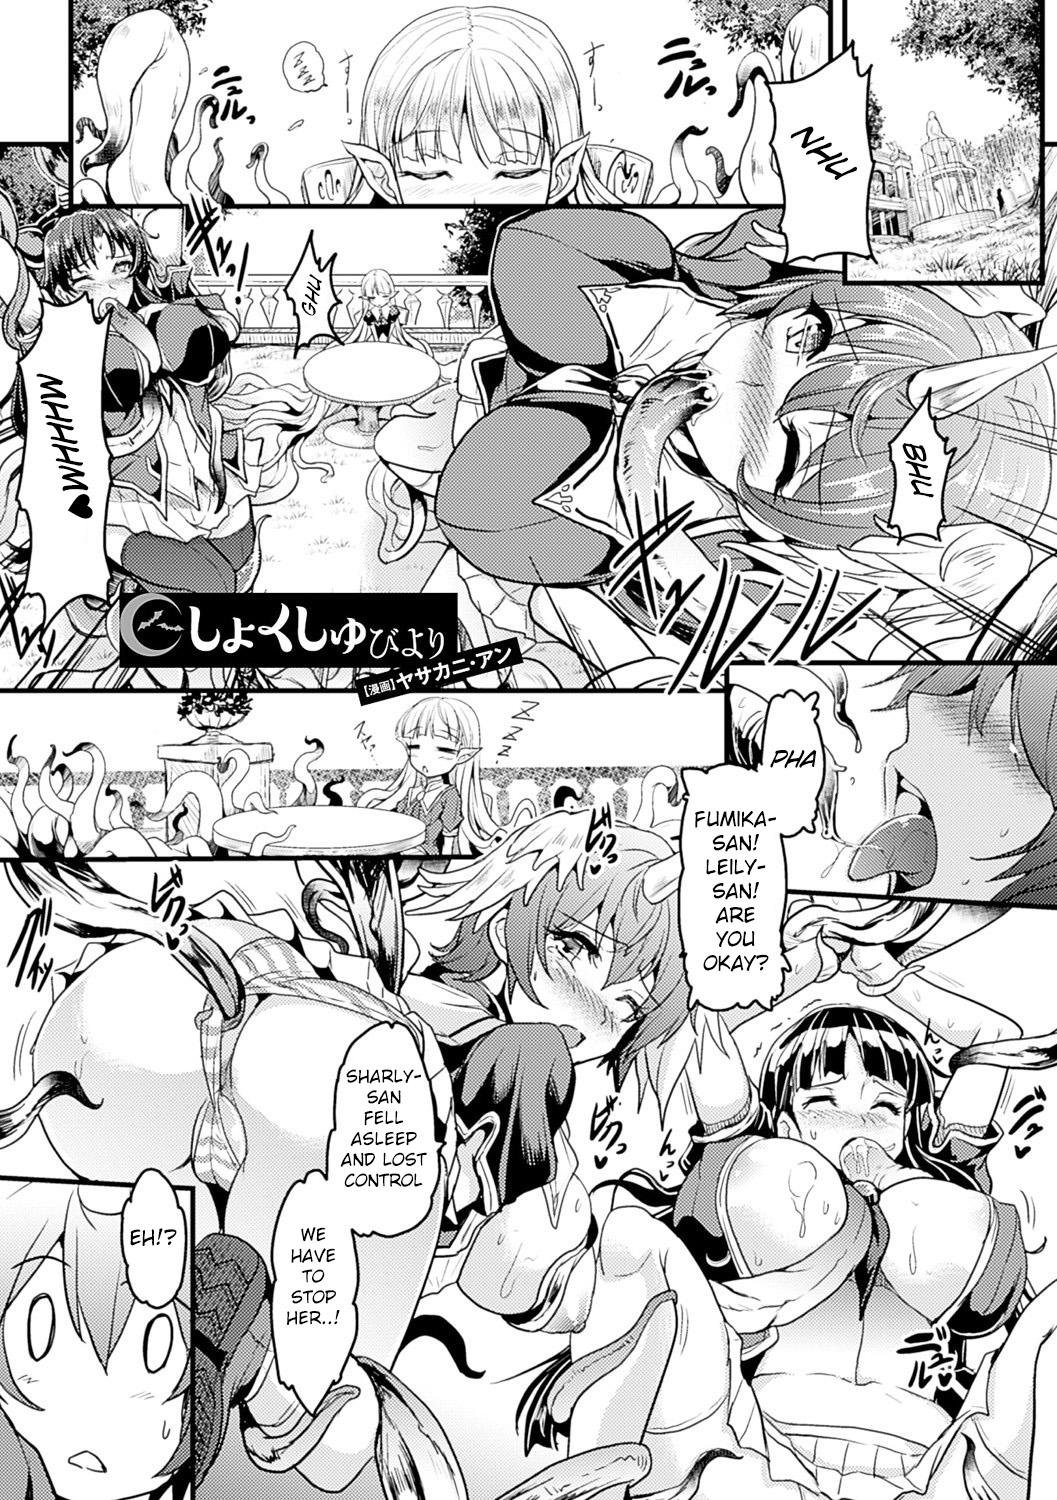 [Erect Sawaru]Shinkyoku no Grimoire III-PANDRA saga 2nd story-ch.20-End+Bonus [English] 85